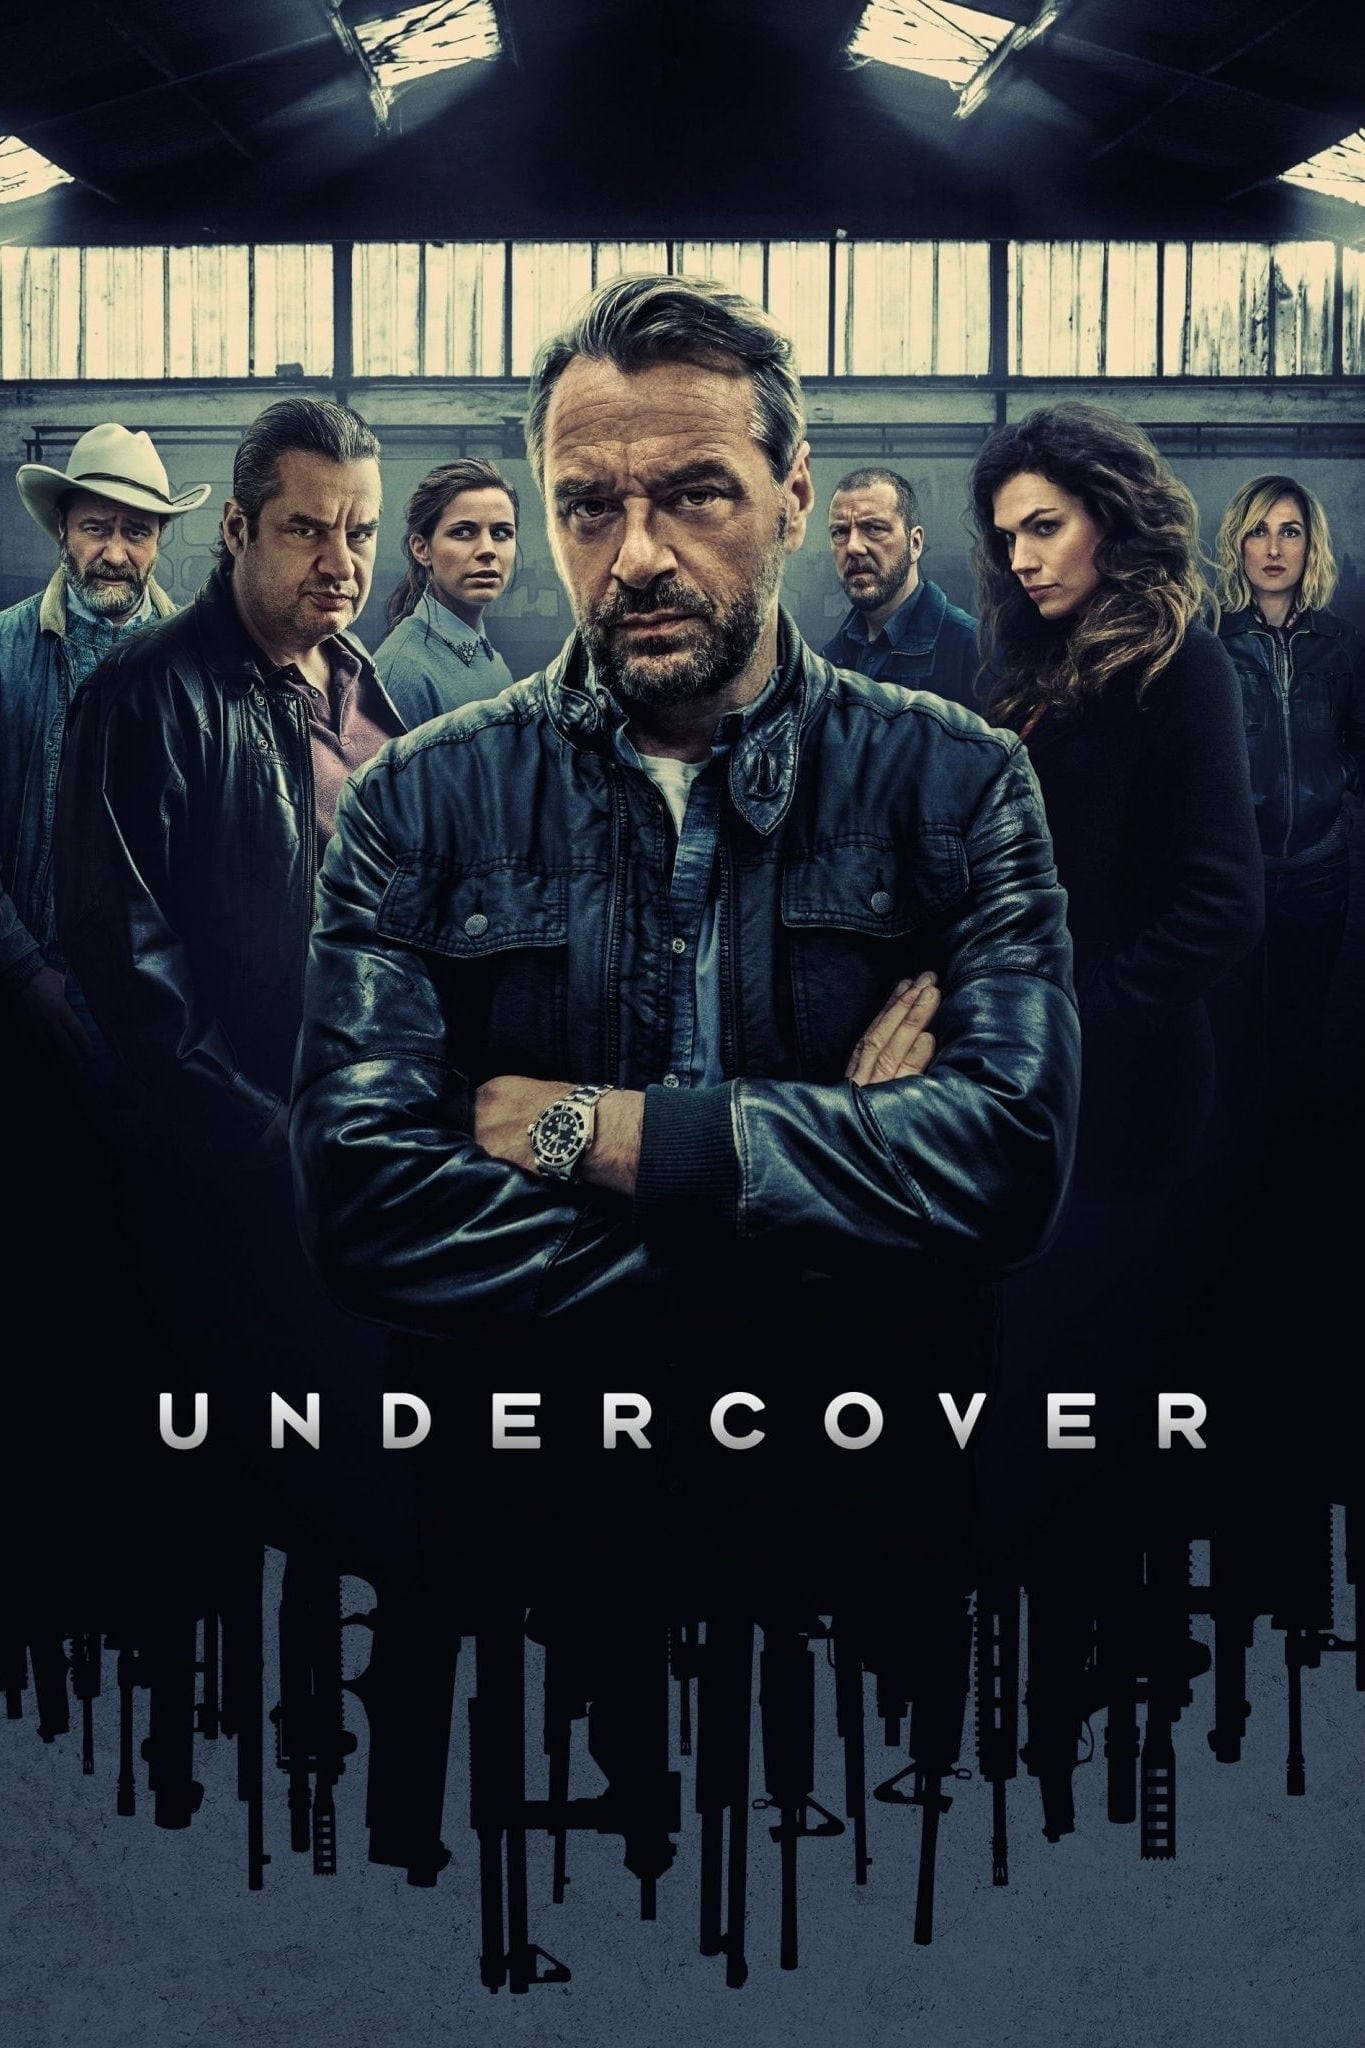 Undercover TV Shows About Drug Dealer